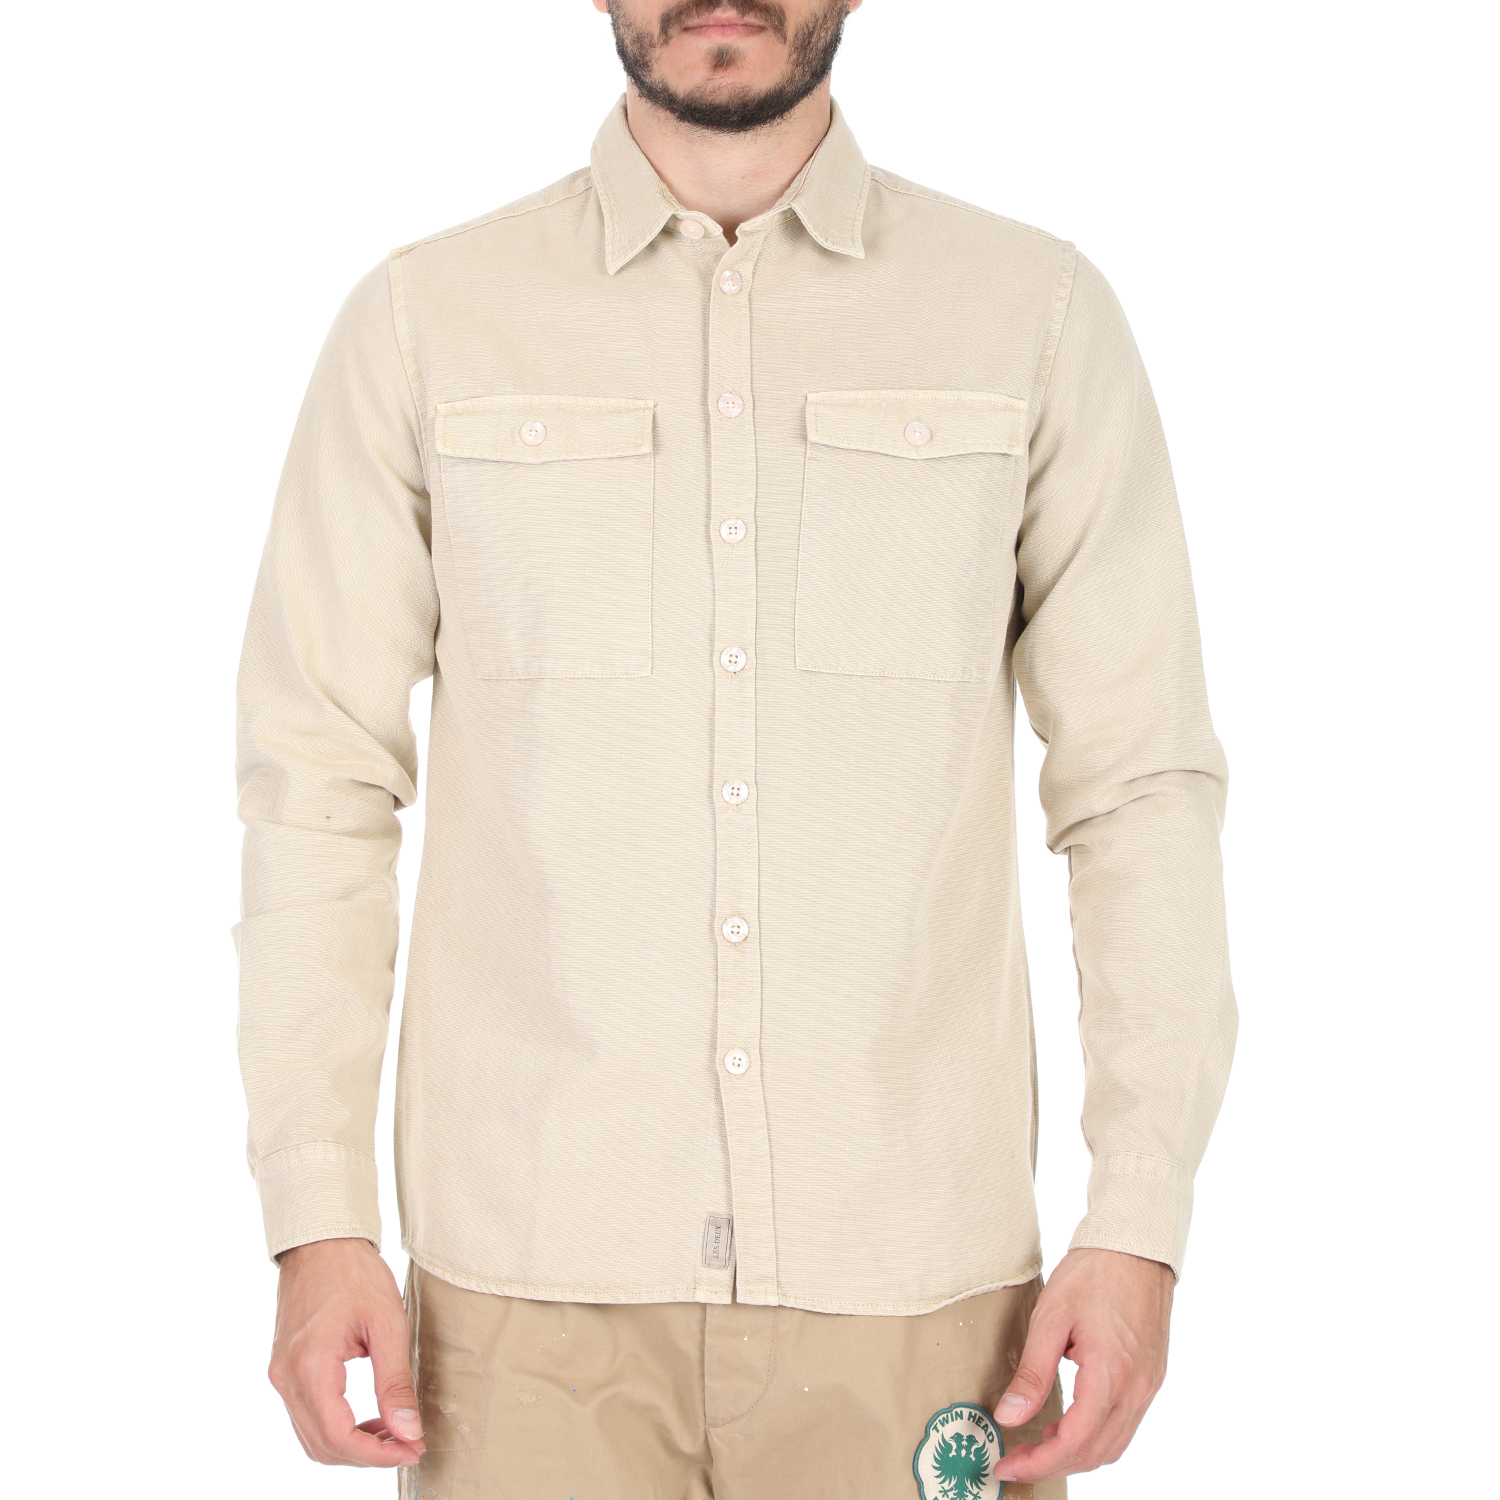 Ανδρικά/Ρούχα/Πουκάμισα/Μακρυμάνικα LES DEUX - Ανδρικό πουκάμισο LES DEUX Bryson Twill Solid Overshirt μπεζ καφέ